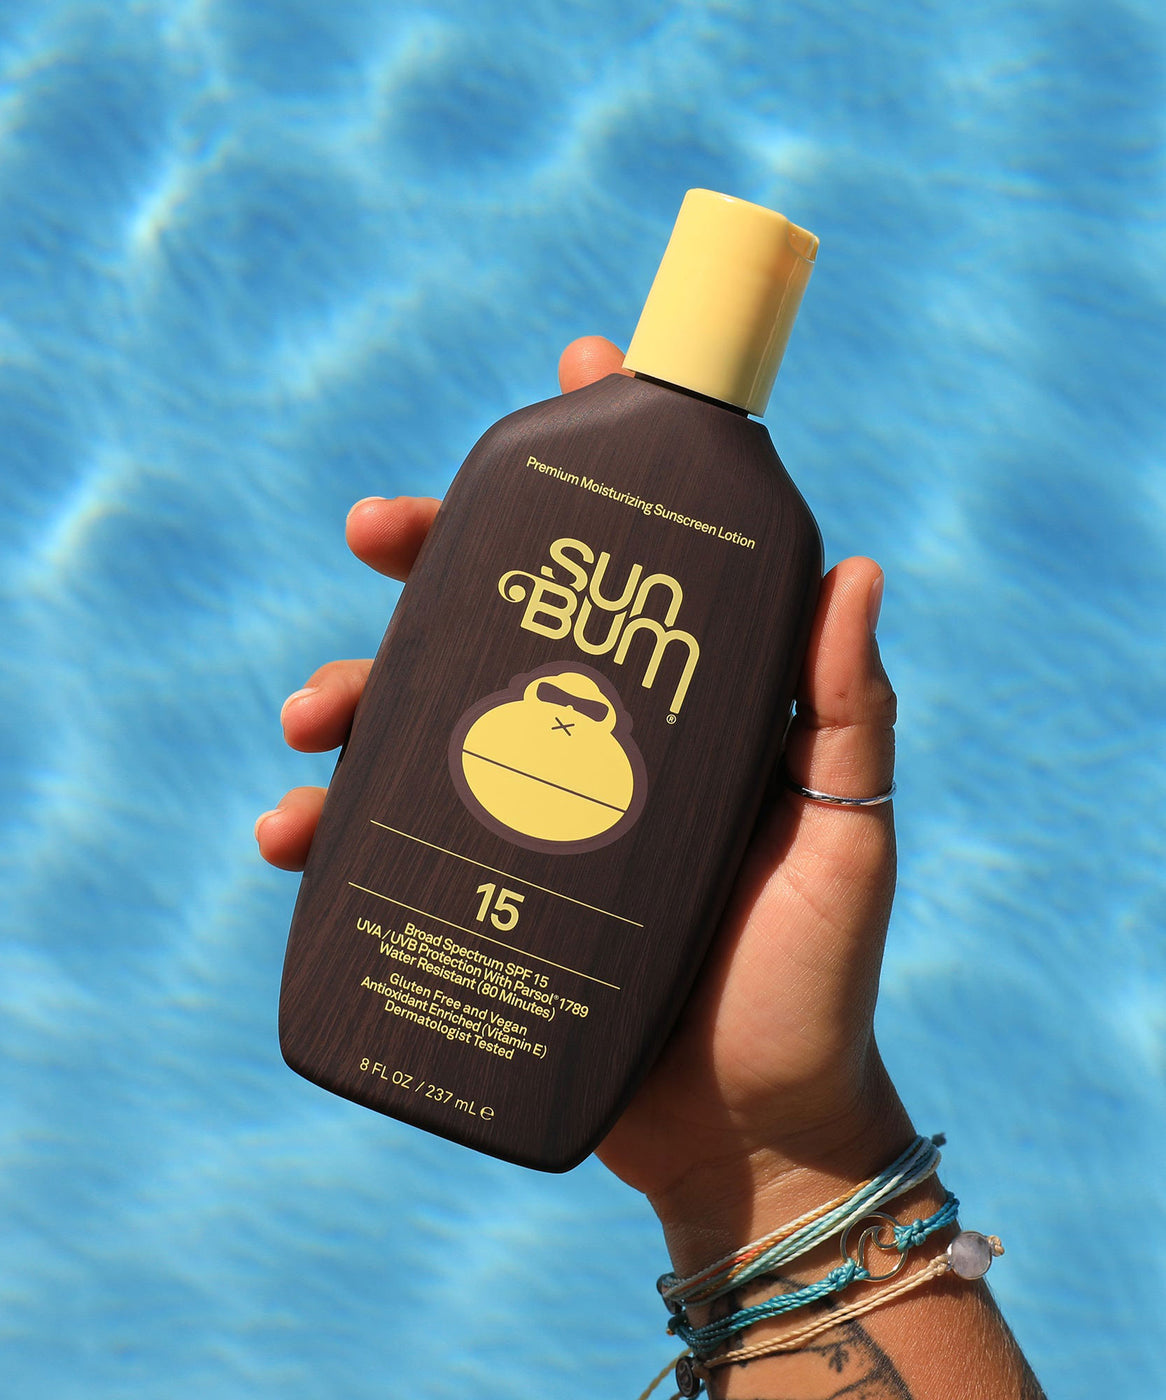 Sun Bum SPF 15 Sunscreen Lotion 8 oz